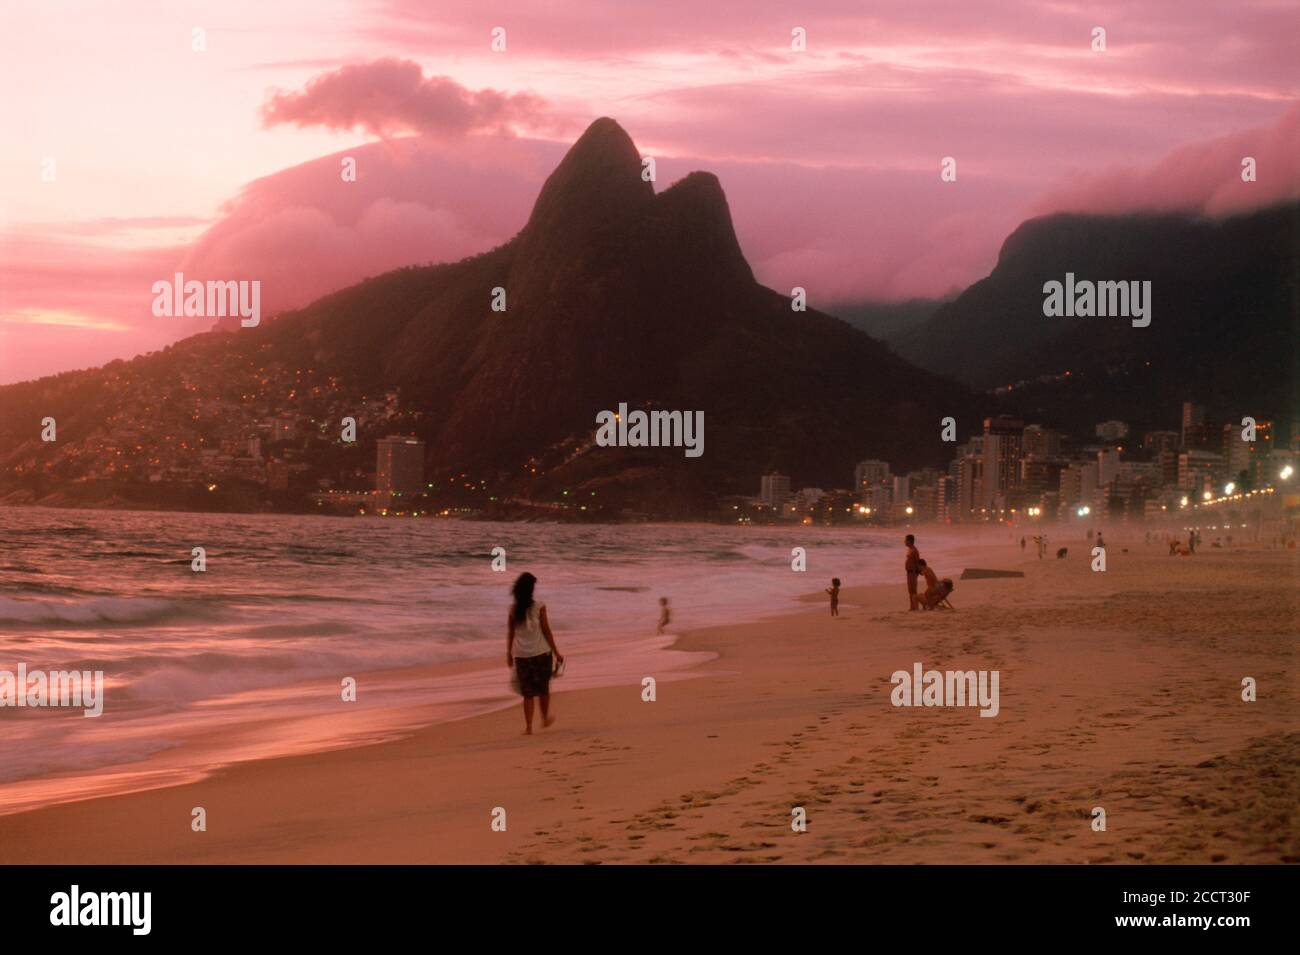 Mujer en las playas de Ipanema en Rio de Janeiro al atardecer con las dos montañas denominada Dois Irmãos o los hermanos Foto de stock